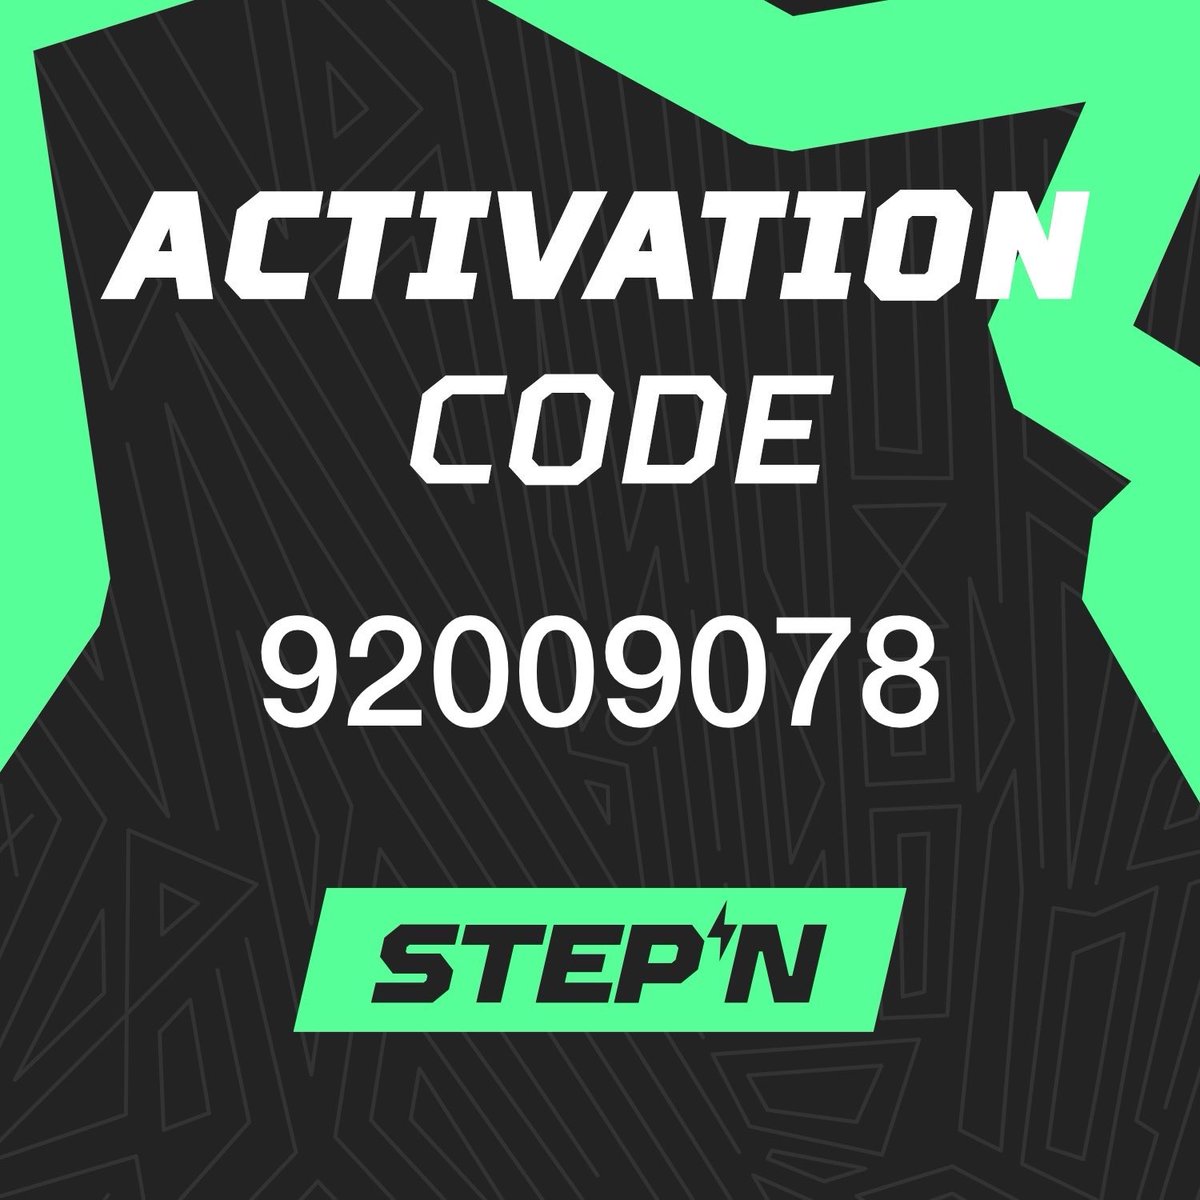 STEPN Activation Code – 👟 Get the App 👟 – stepn.com

#STEPN #StepnActivationCode #StepnActivation